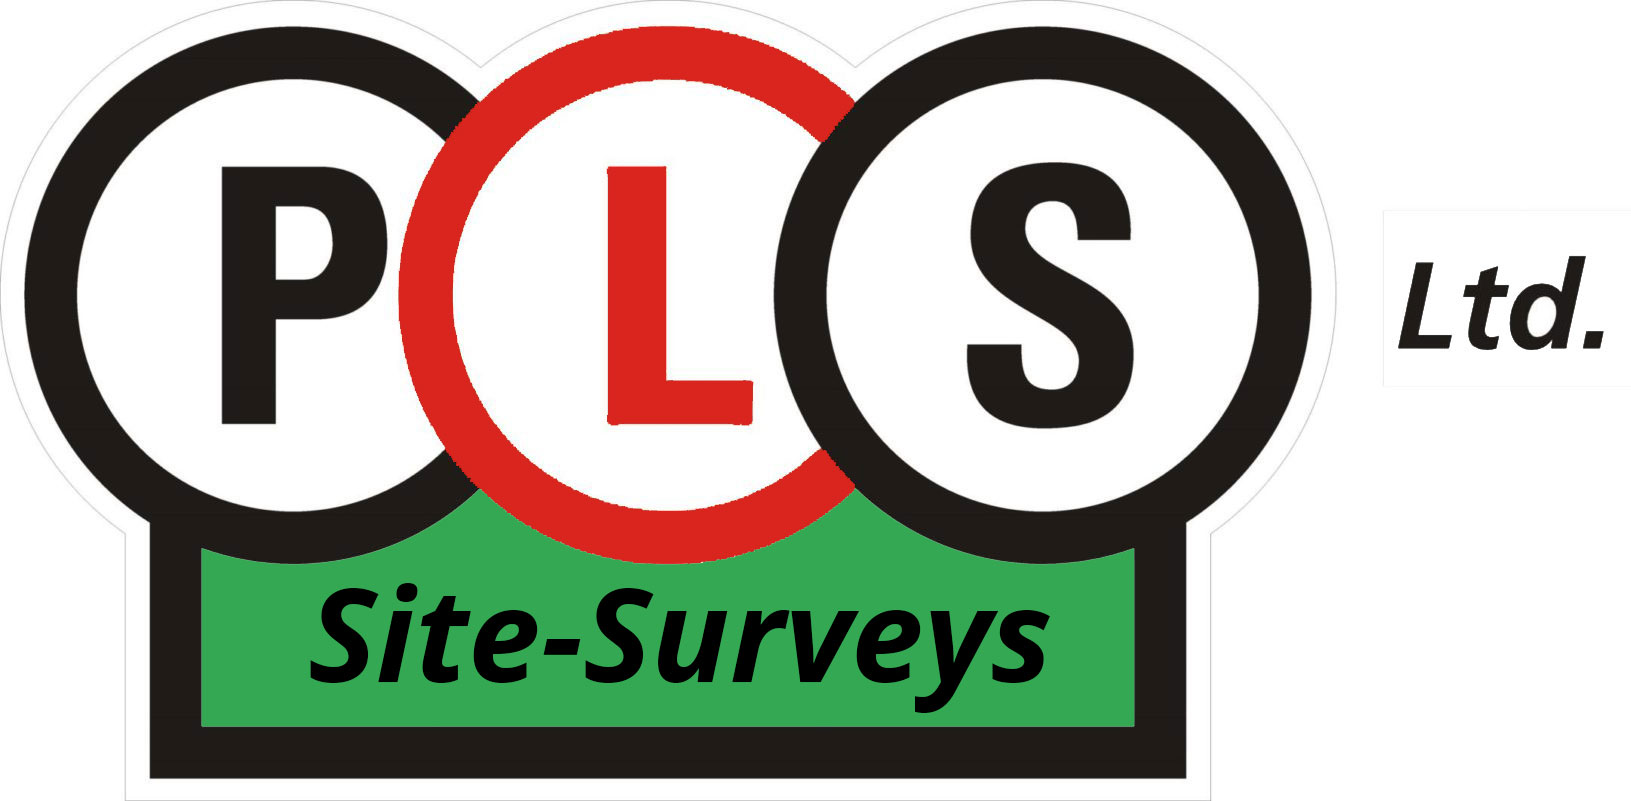 Uk Pipe Logo Survey New